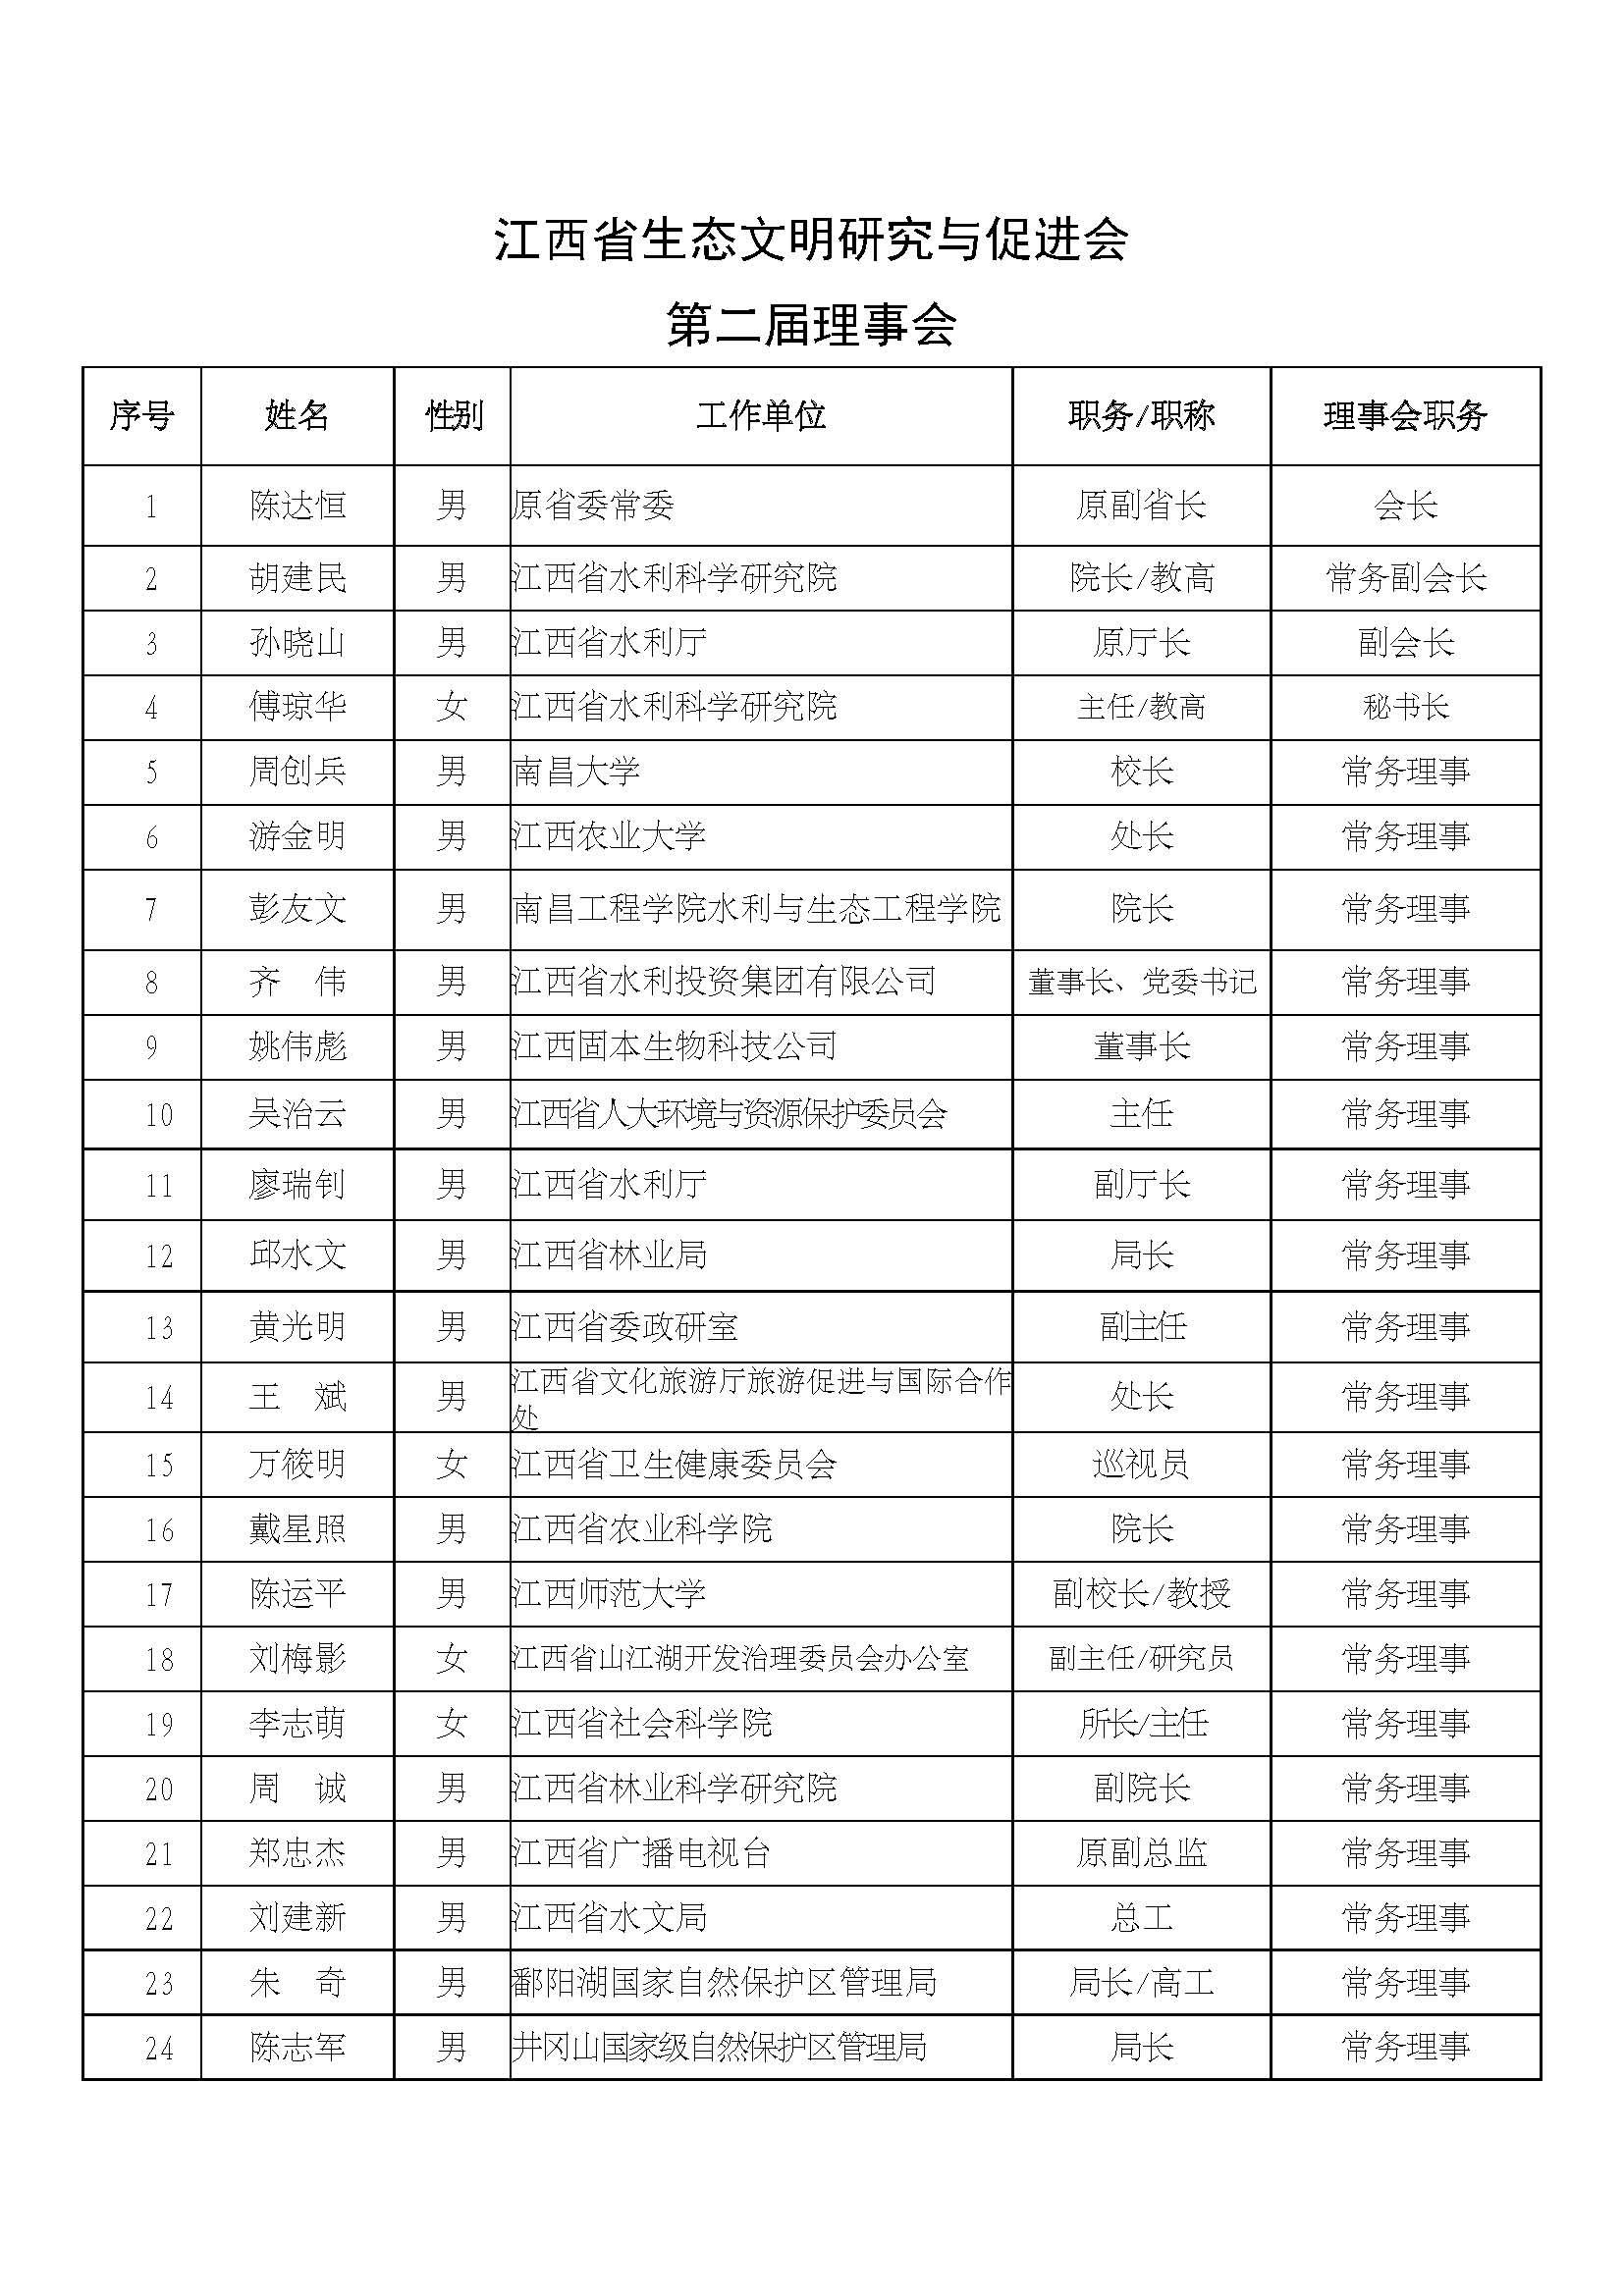 江西省生态文明研究与促进会第二届理事会名单_页面_1.jpg